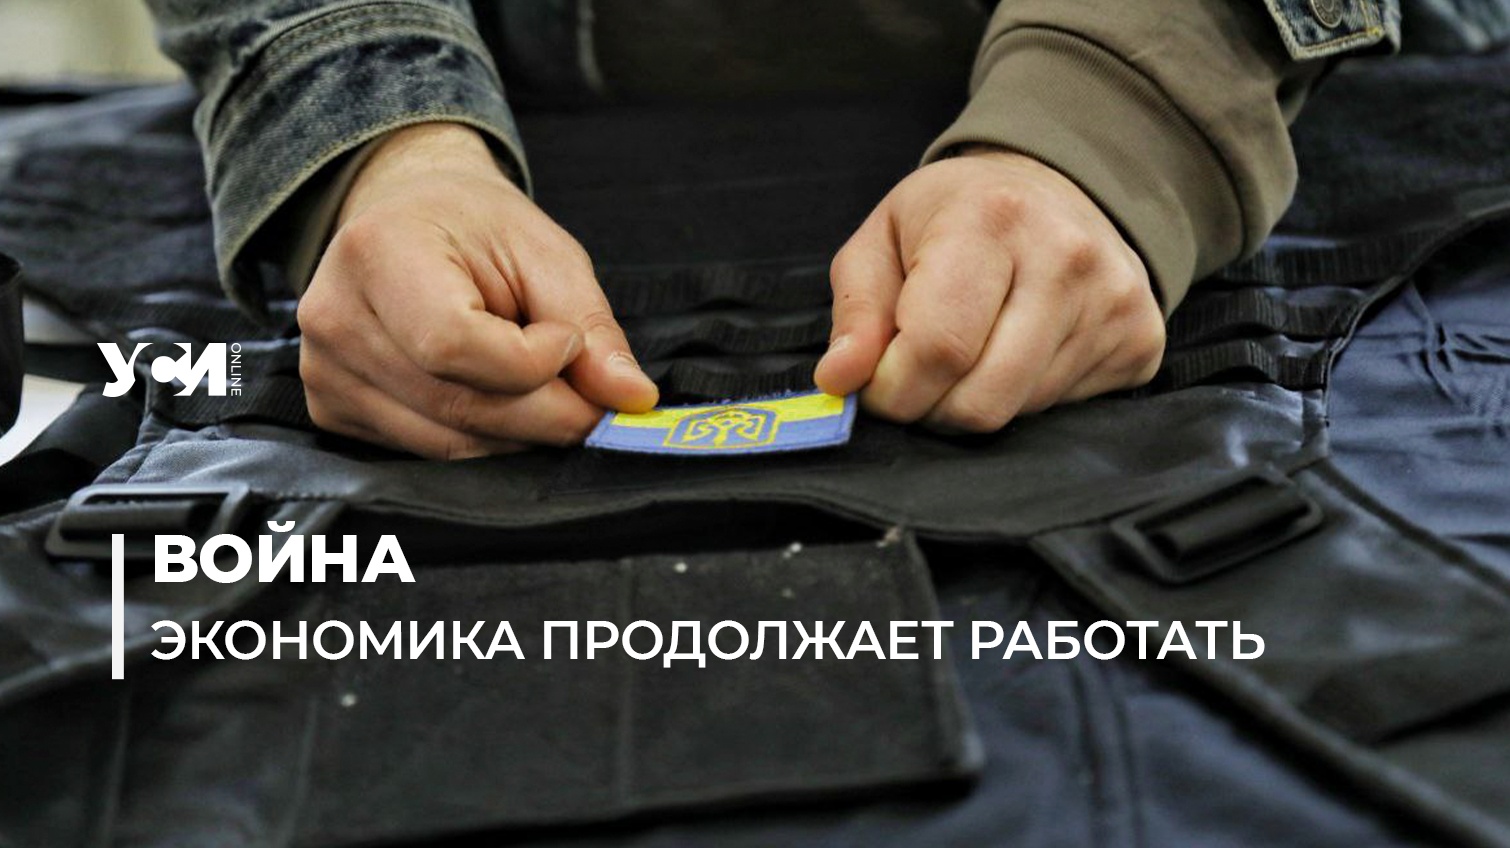 75% украинских предпринимателей продолжают работать «фото»